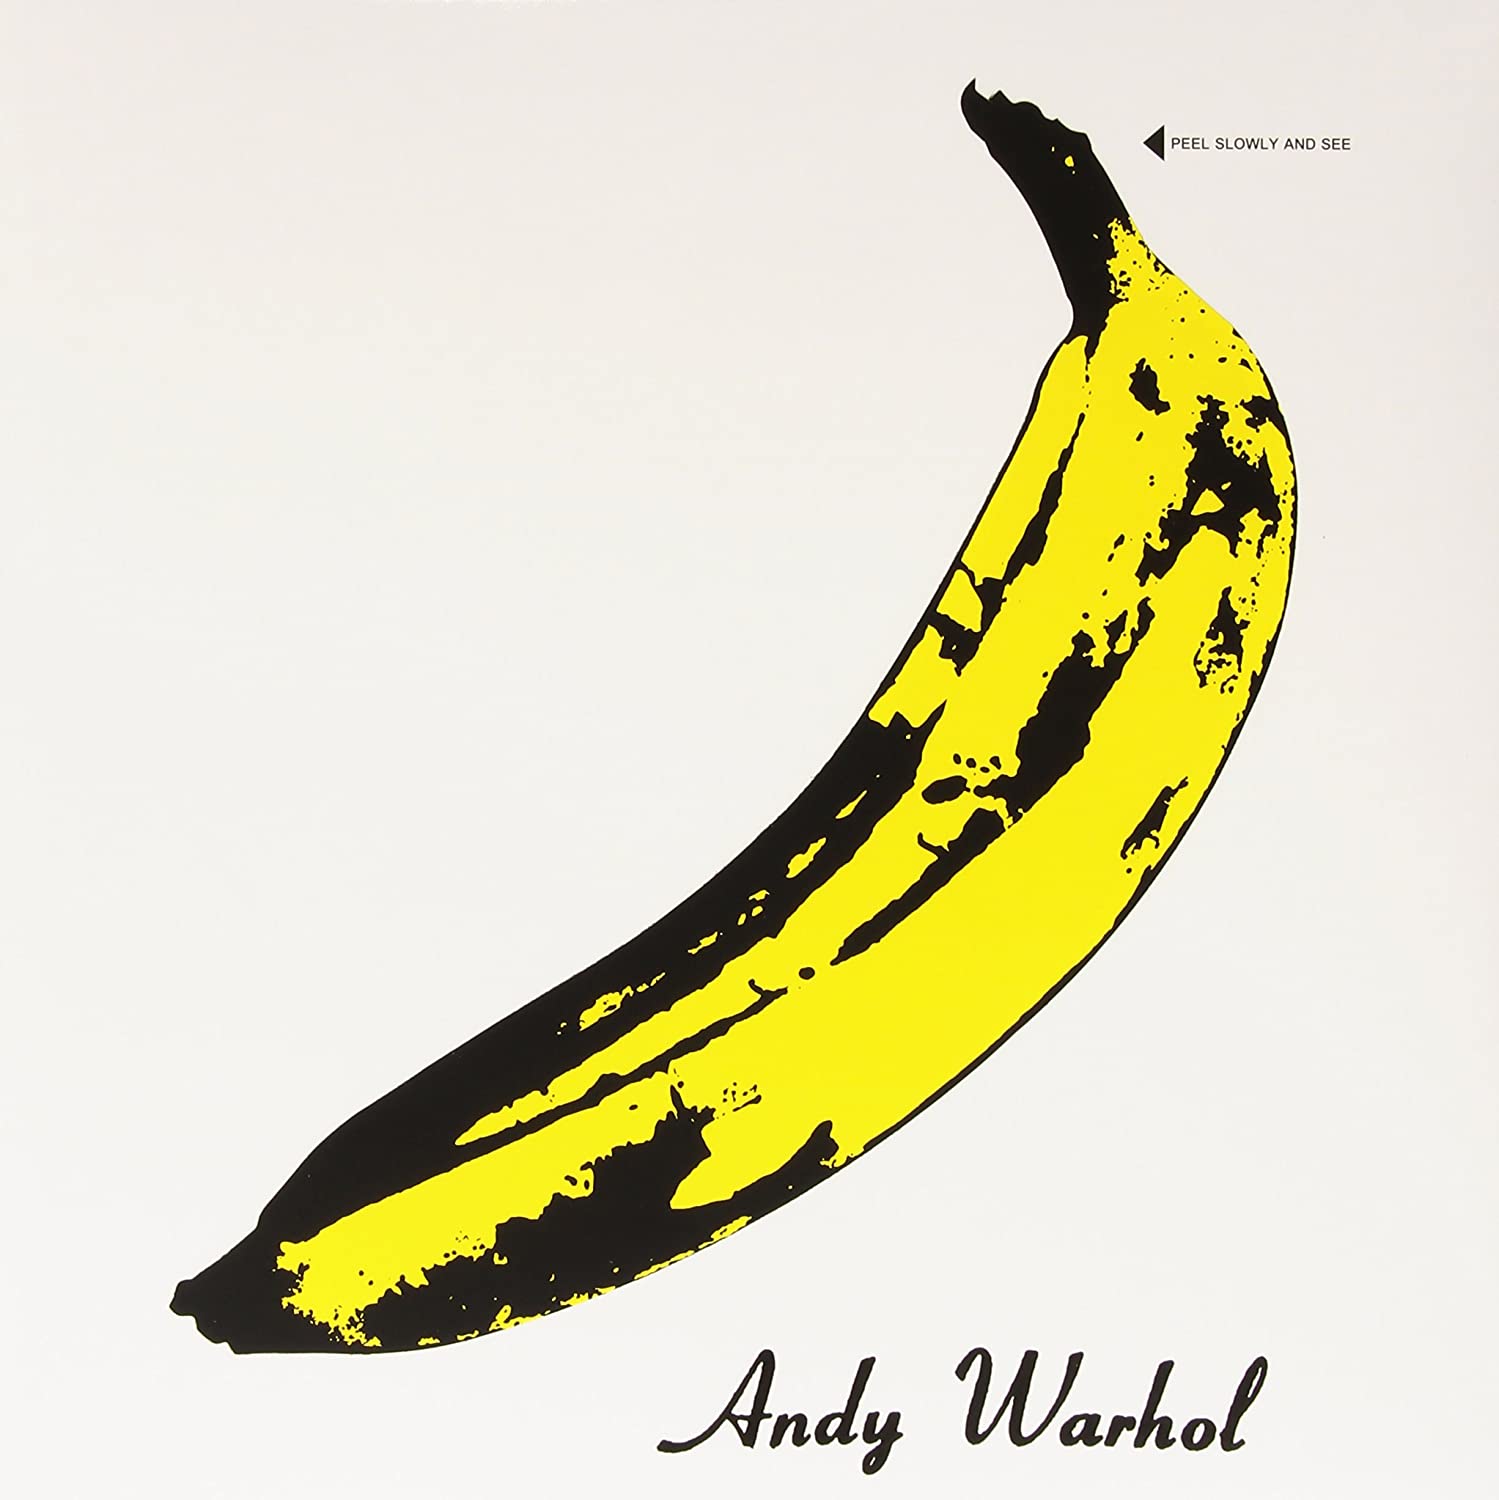 The Velvet Underground "The Velvet Underground" CD